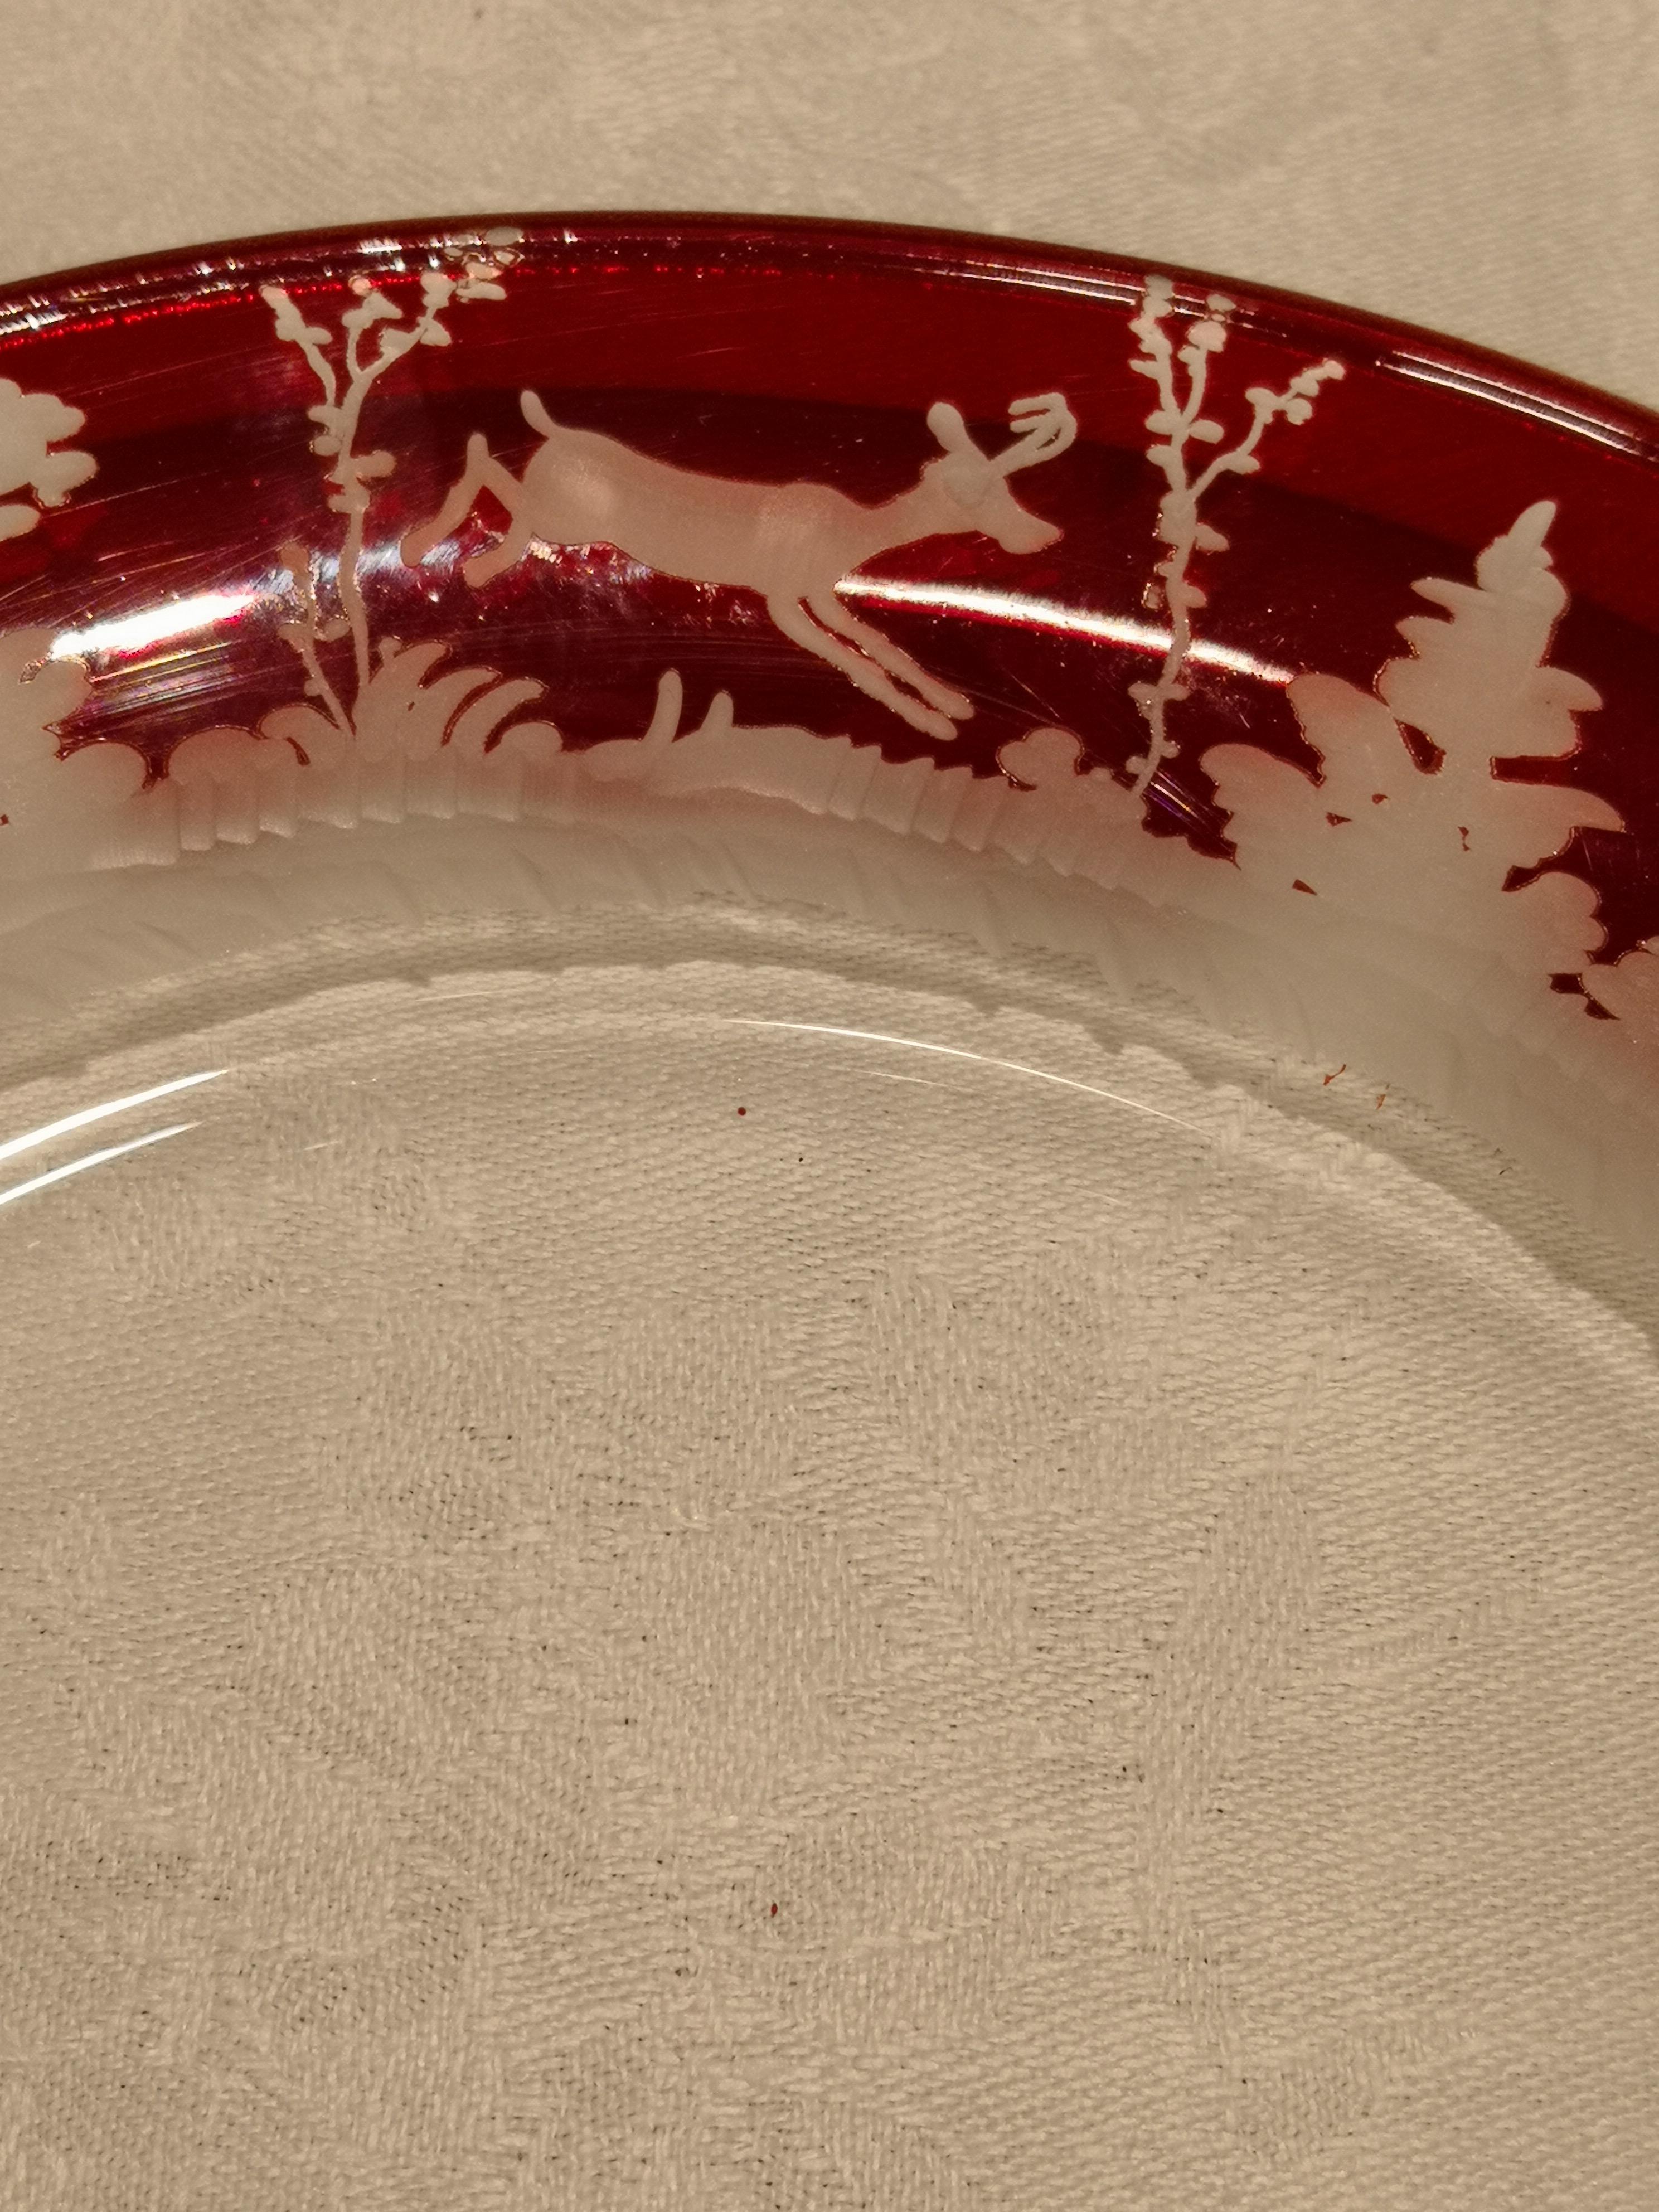 Set aus sechs Tellern in rotem Kristall mit einer freihändig eingravierten antiken schwarzen Jagddekoration rundherum. Das charmante handgravierte Dekor zeigt ein Jagddekor mit Rehen, Hasen und Bäumen im Stil des Schwarzwaldes. Die Glasplatten